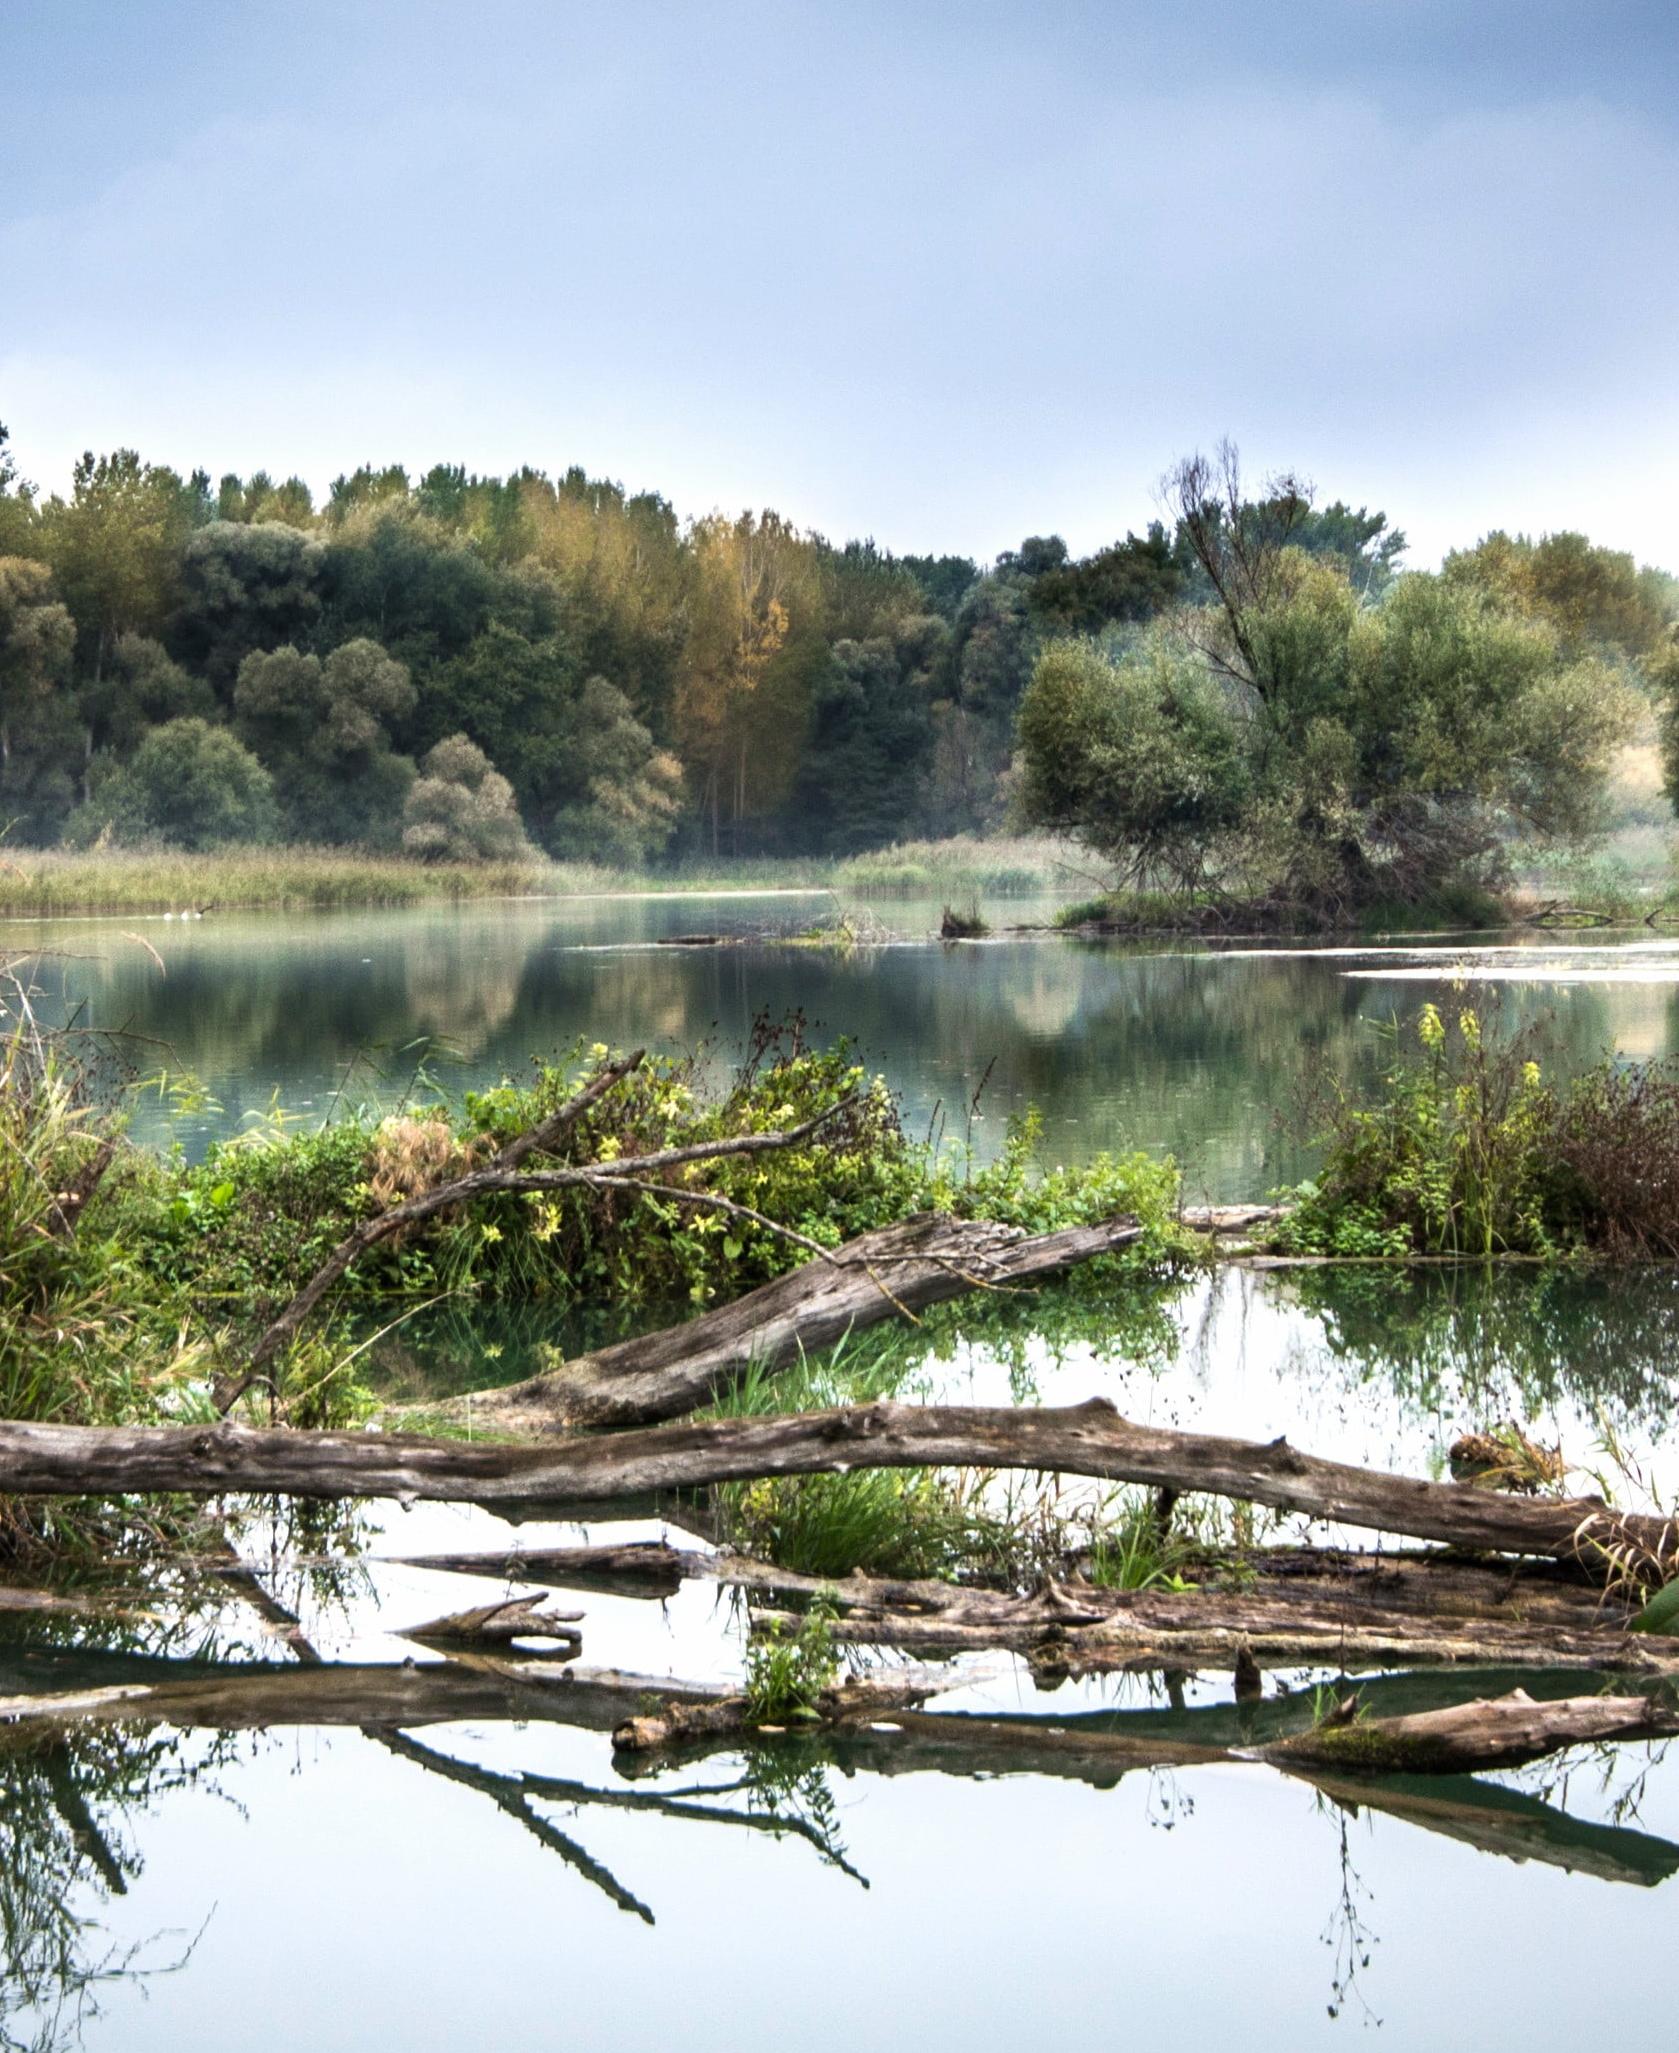 Ilustračná fotka lužného lesa z povodia Dunaja na Slovensku, CC0 licencia.